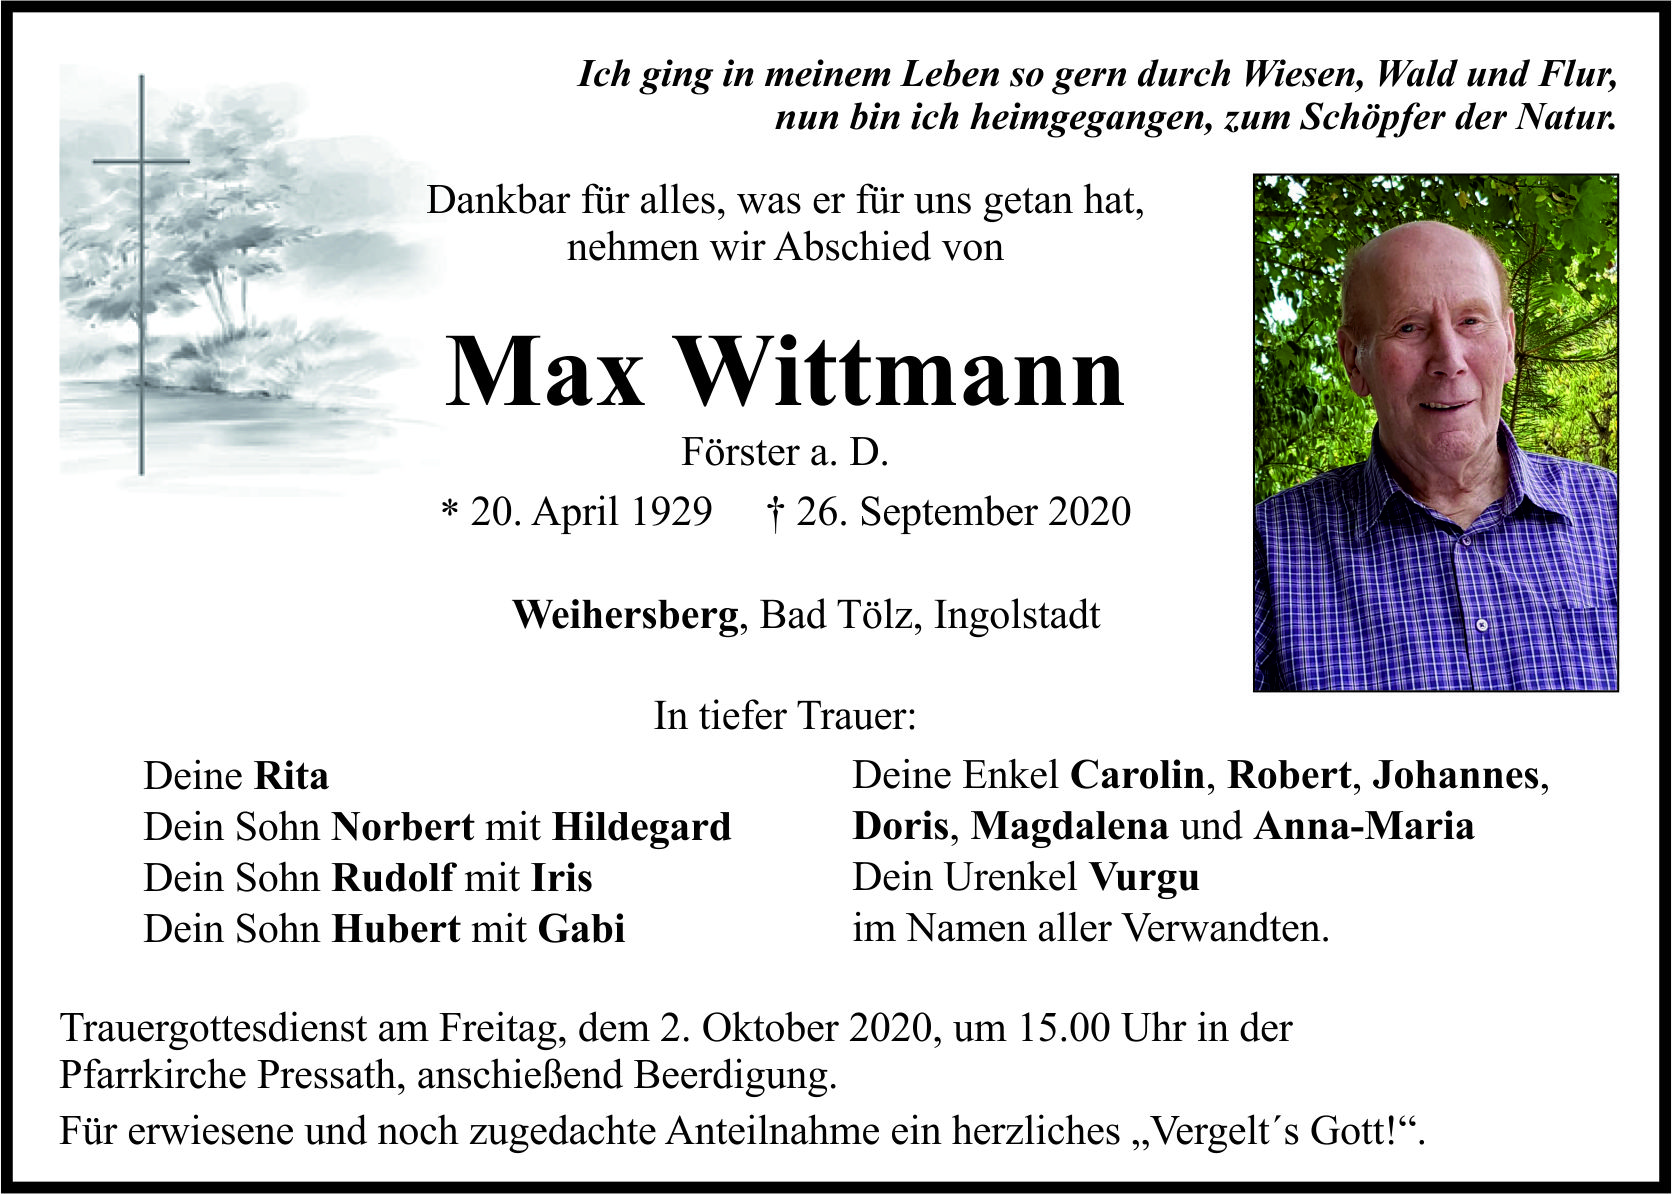 Traueranzeige Max Wittmann, Weihersberg